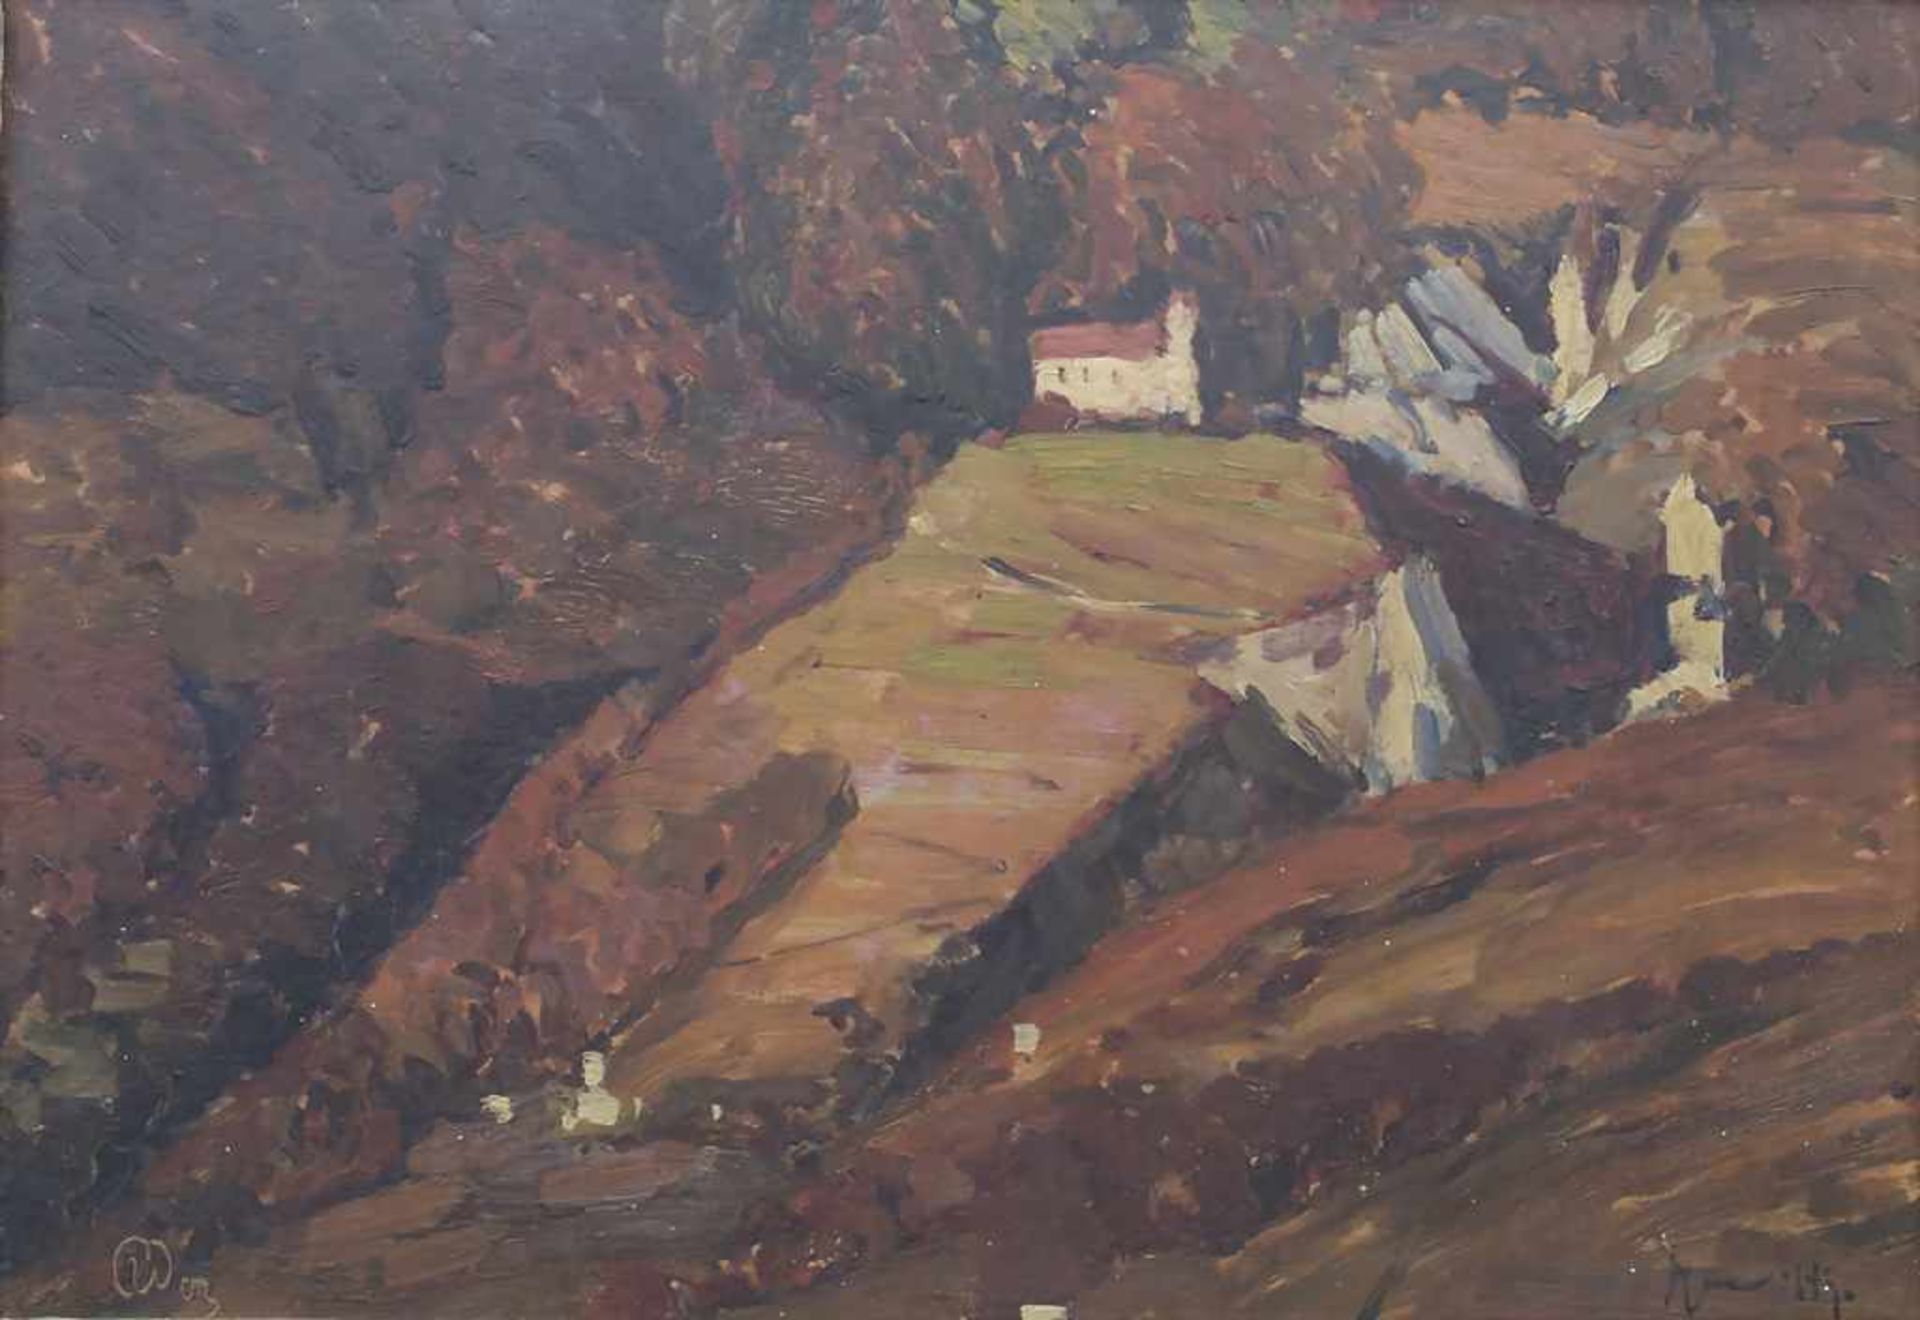 Prof. Max Uth (1863-1914), 'Landschaft mit Schloss Tirol' / 'A landscape with the castle Tirol'